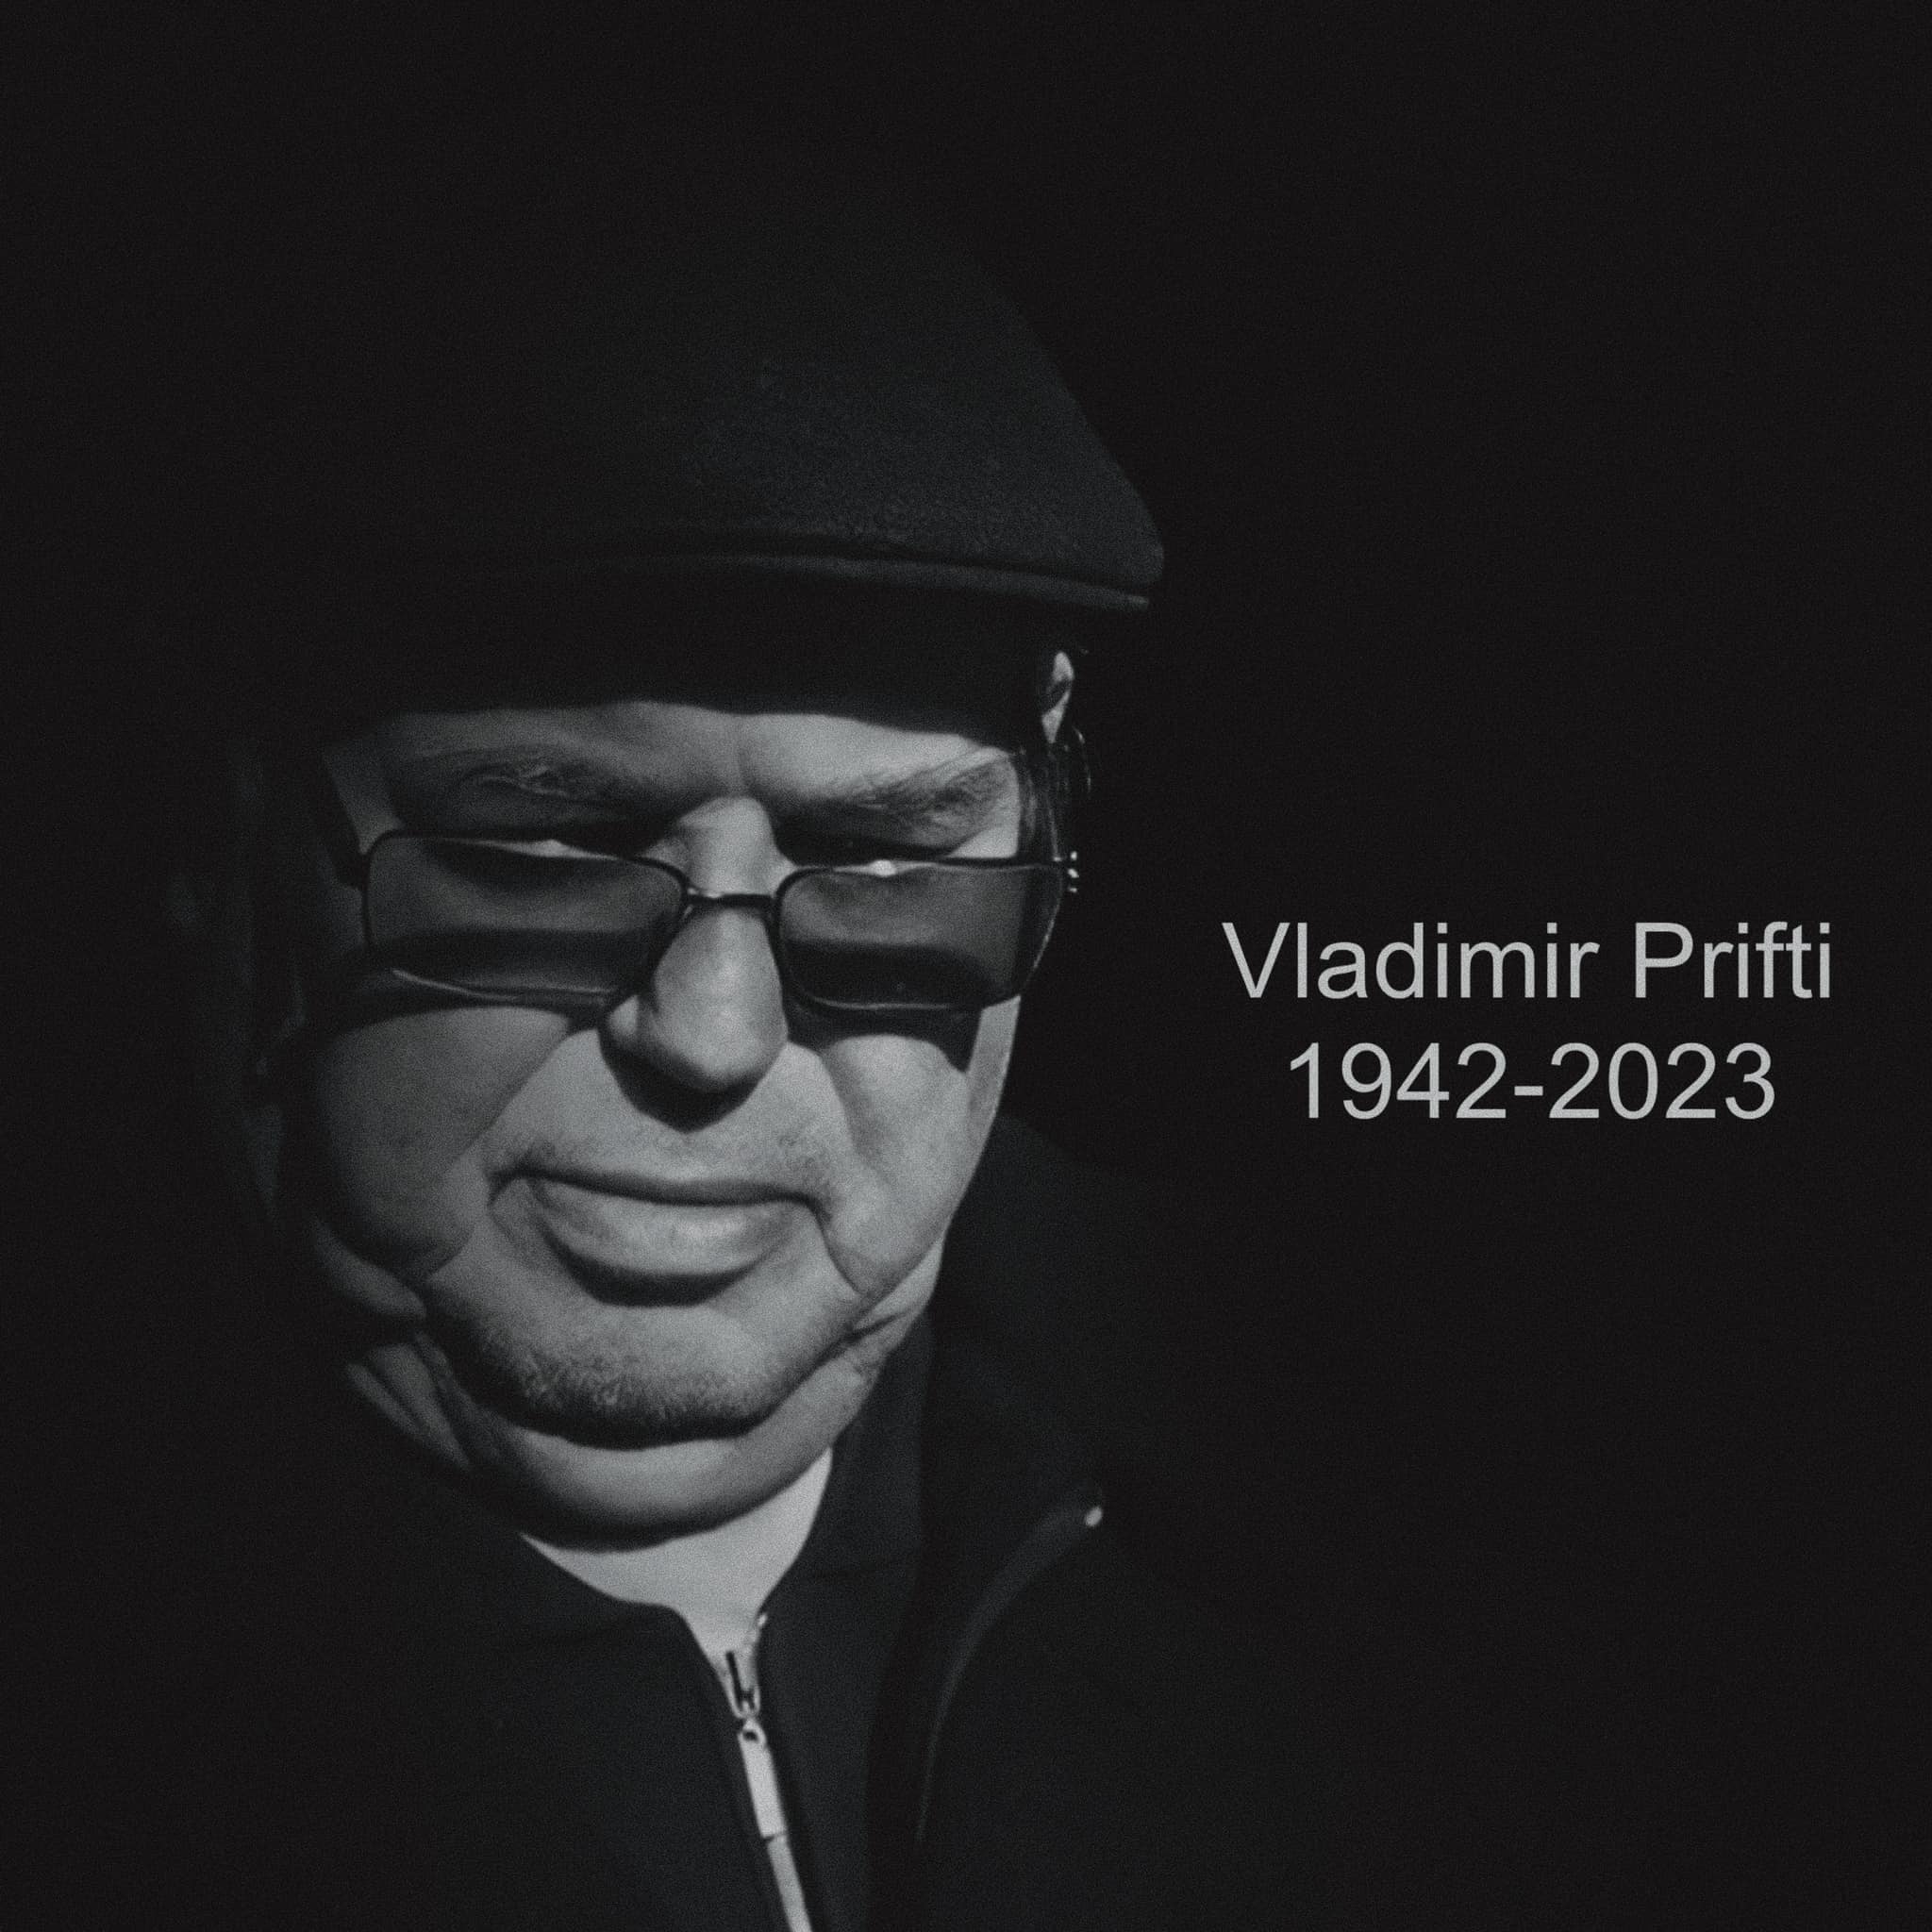 Vladimir Prifti